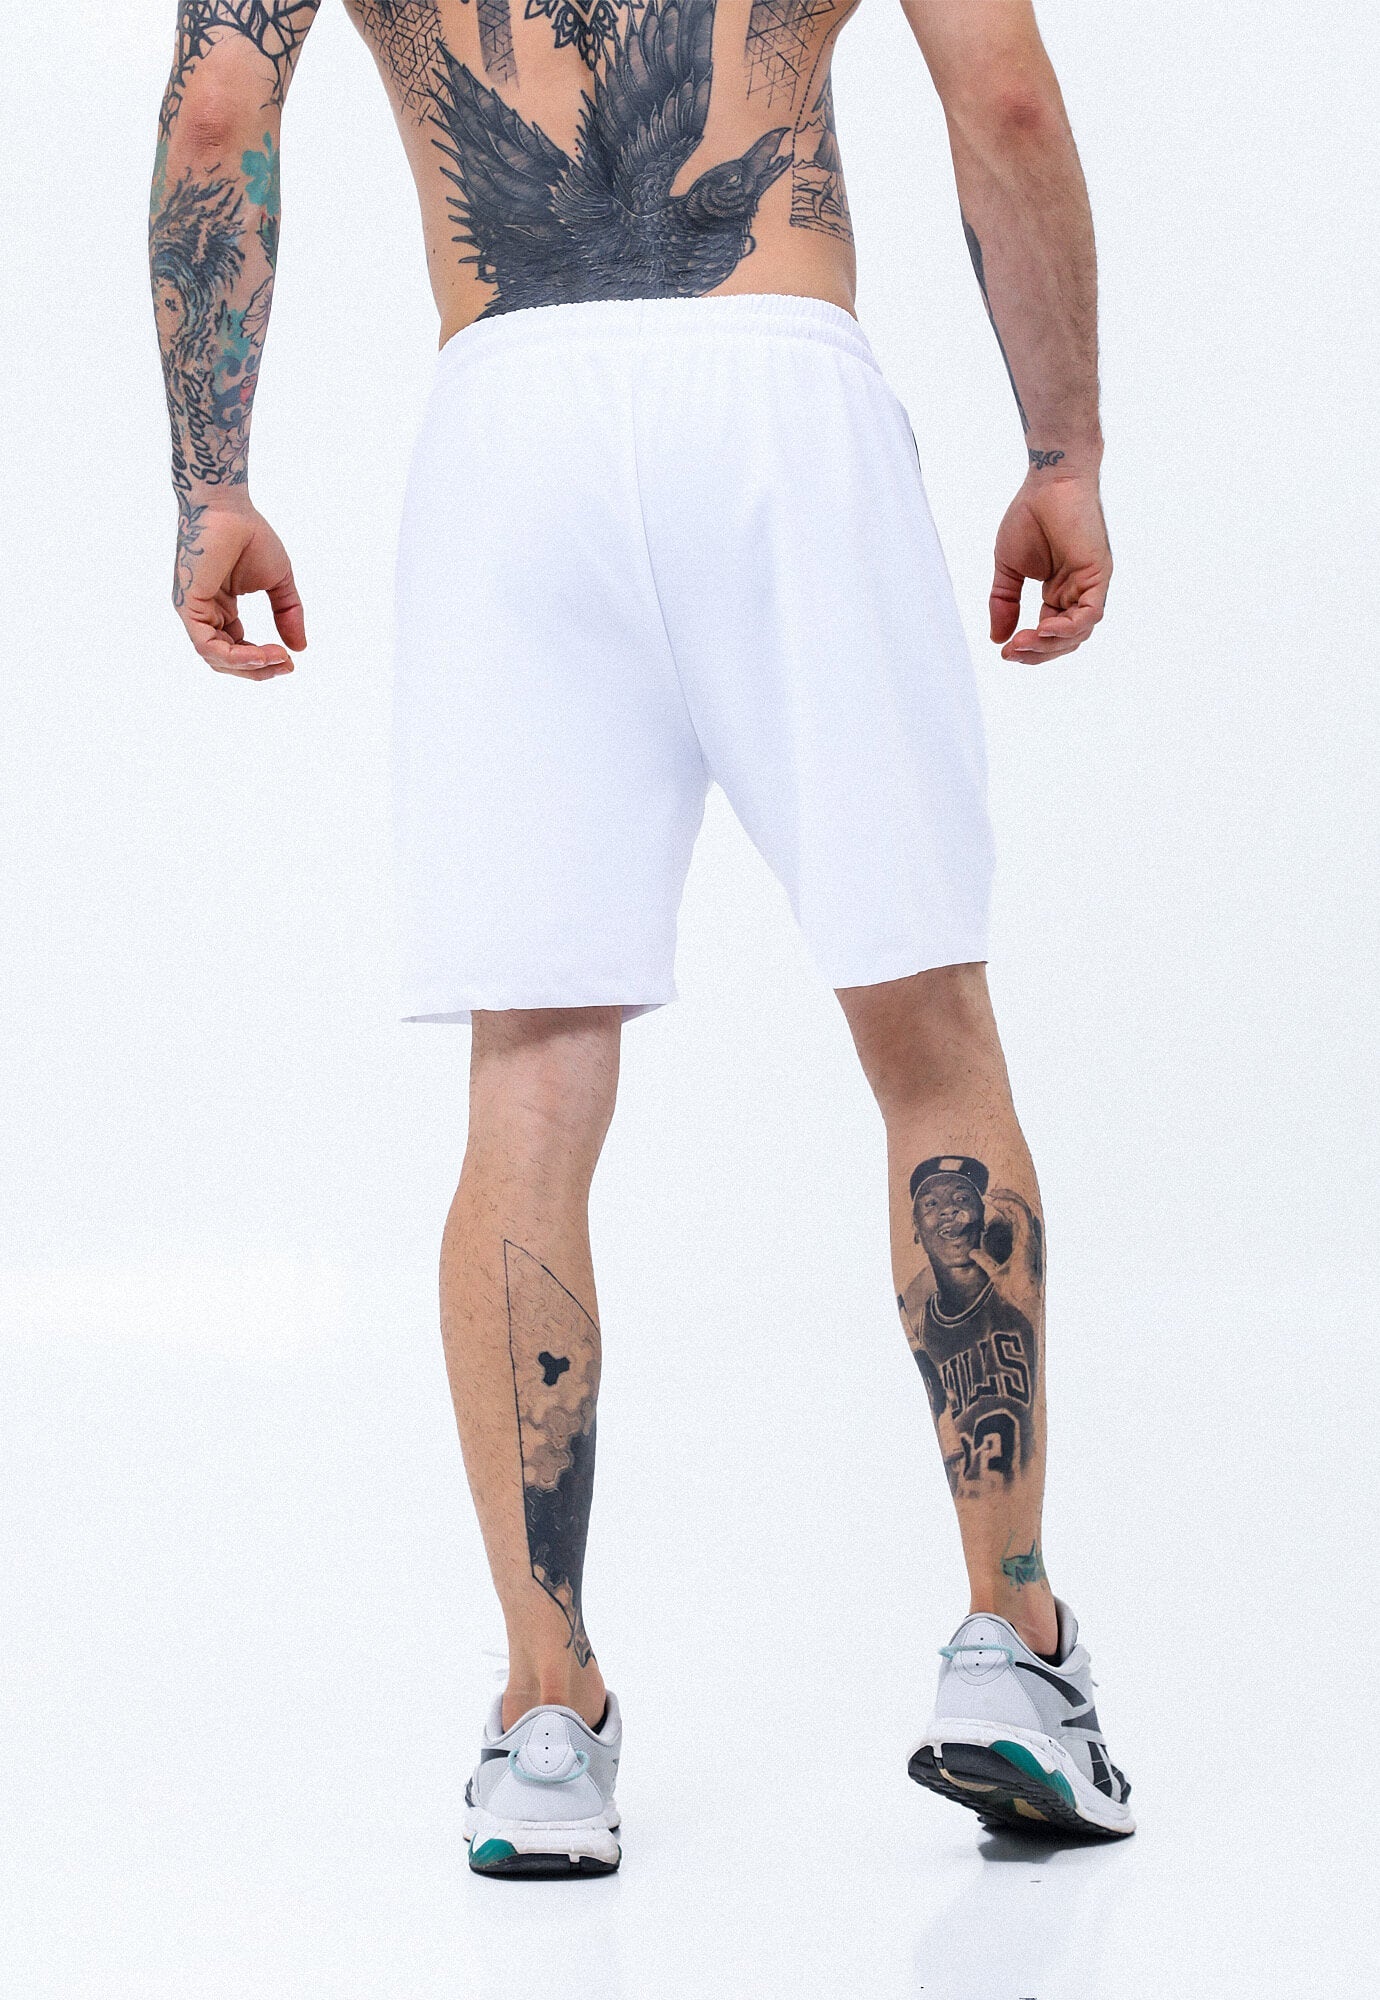 Pantaloneta deportiva blanco óptico con detalles reflectivos en laterales y ciclista interno macher para hombre